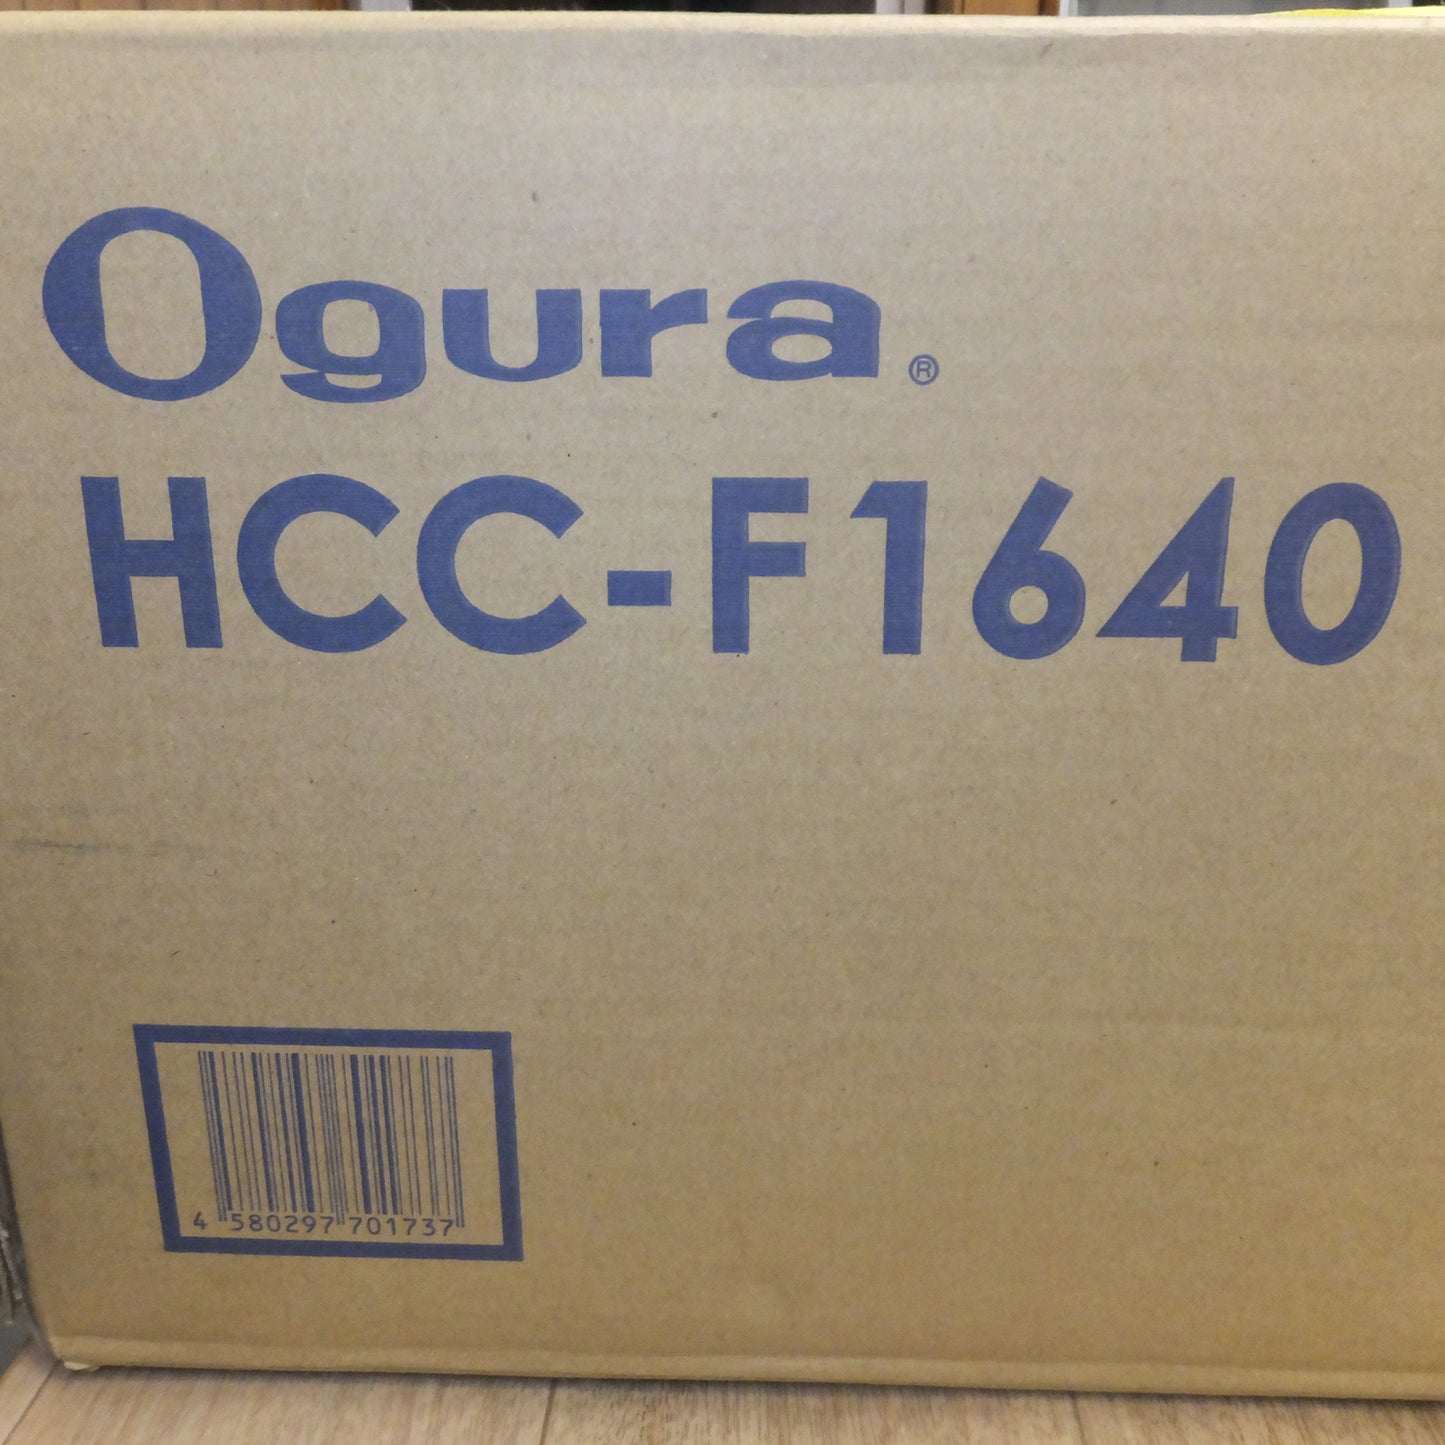 [送料無料]未使用★オグラ Ogura コードレス鉄筋カッター HCC-F1640★